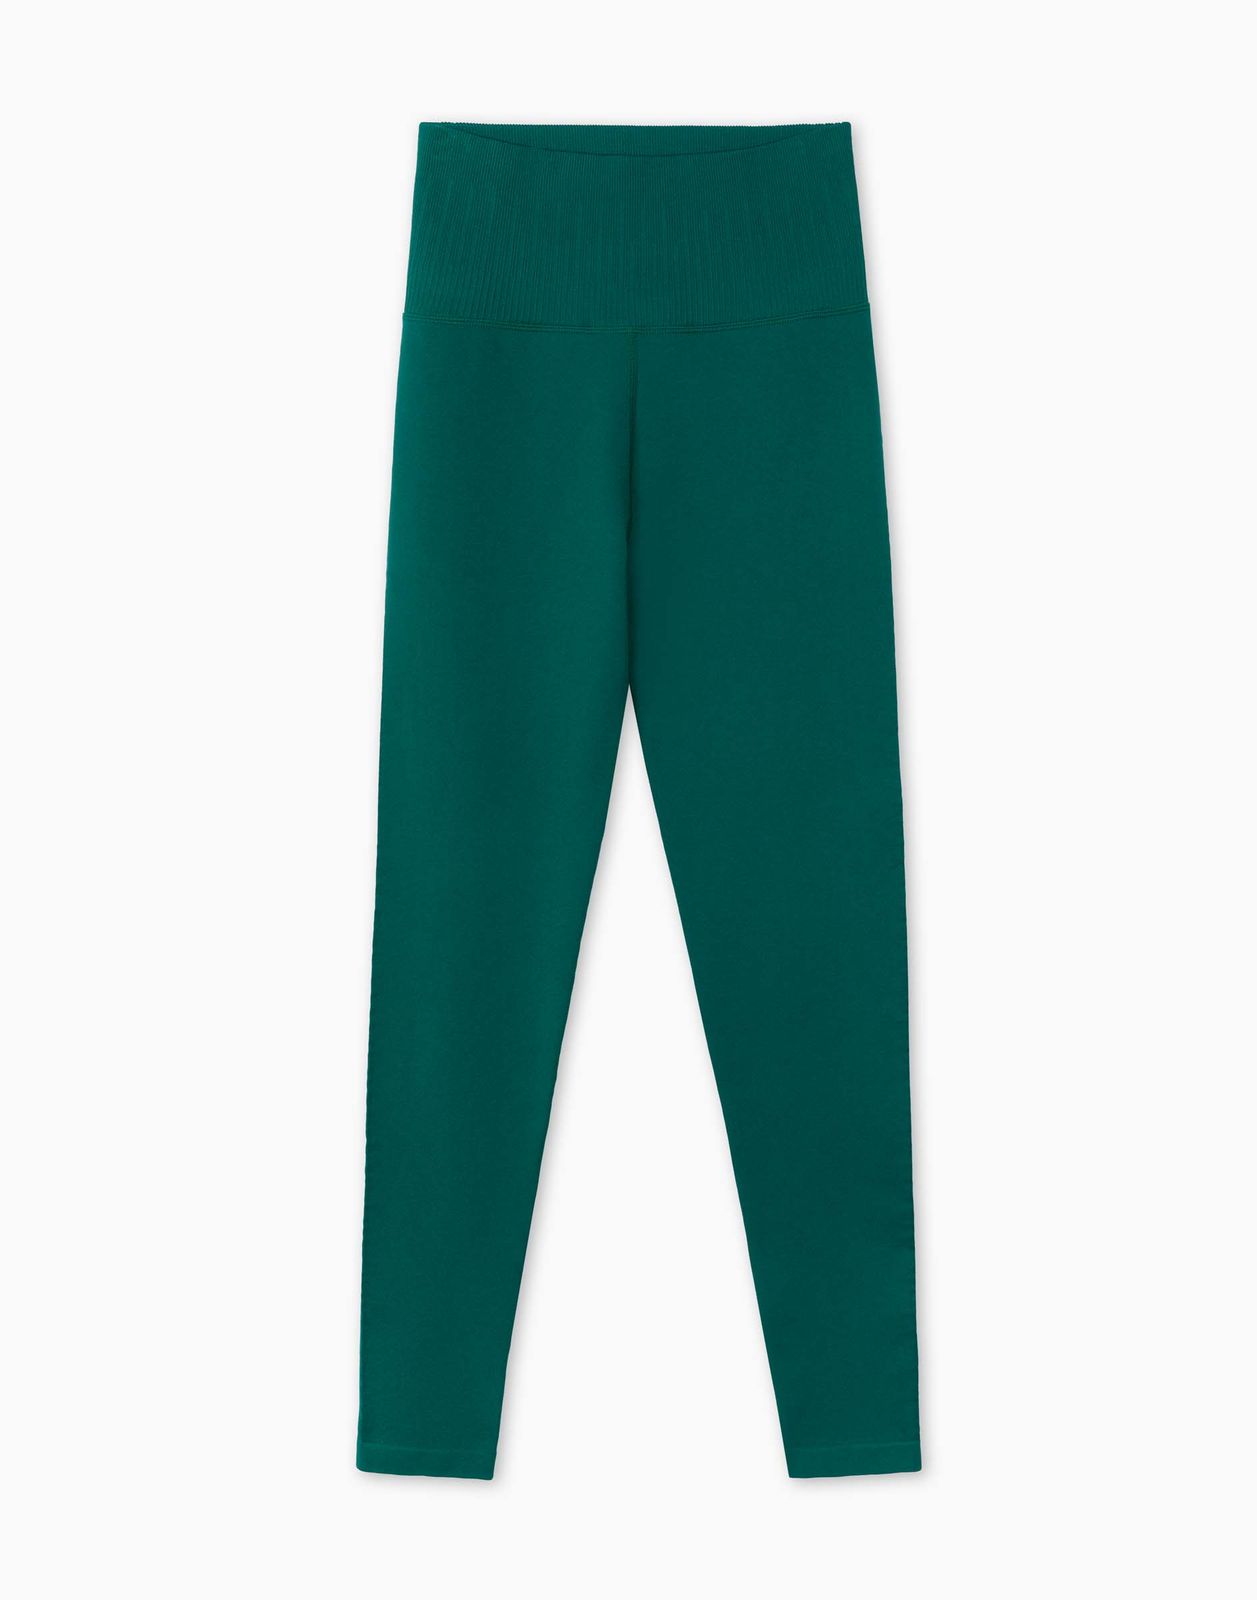 Спортивные леггинсы женские Gloria Jeans GRT000422 зеленые M/170 (44-46)